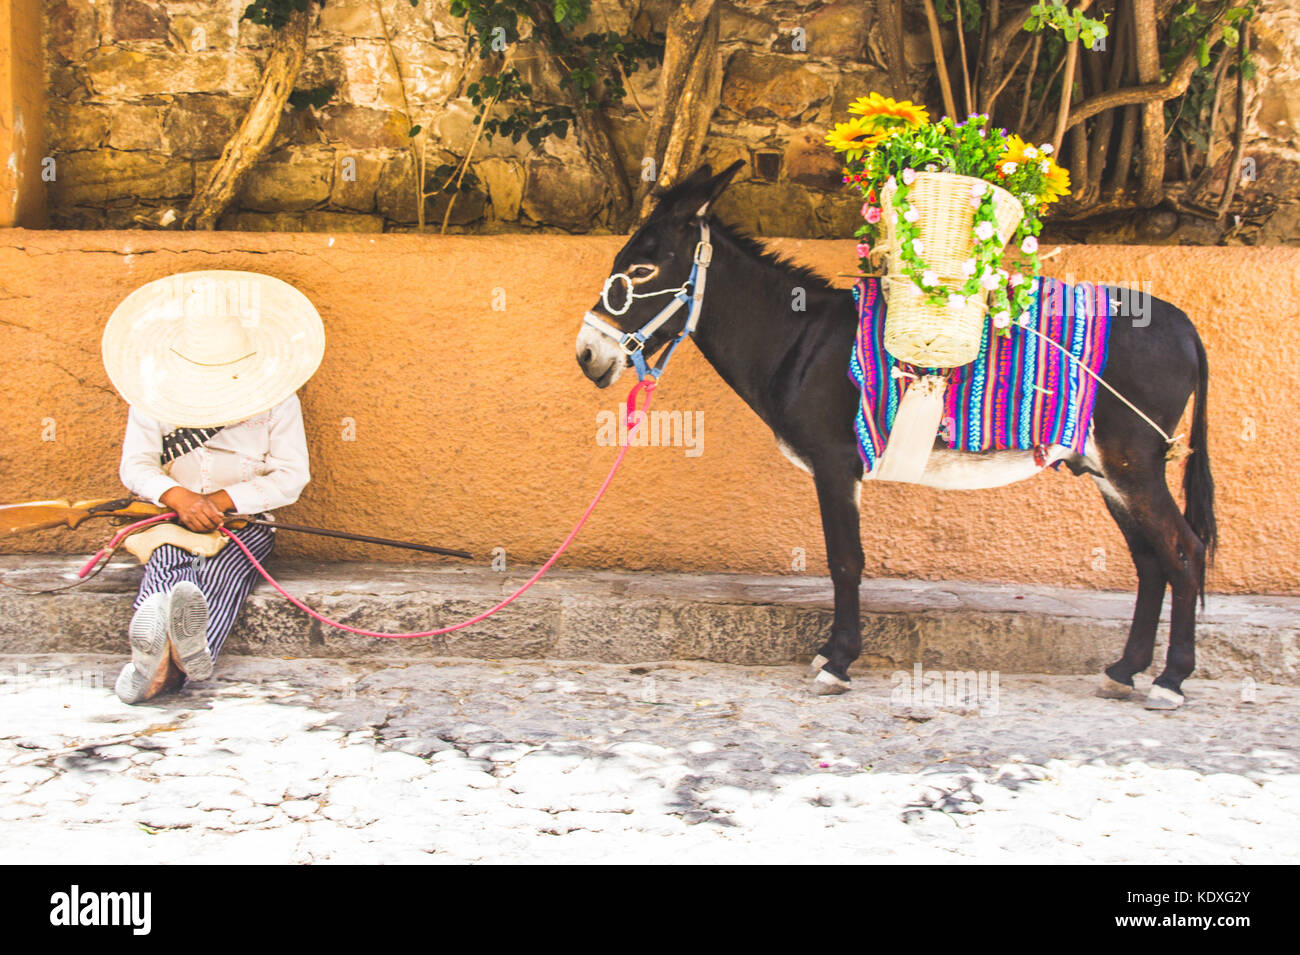 San Miguel de Allende, Guanajuato - Mexique - 0627 2017 : l'homme avec le costume traditionnel mexicain révolutionnaire et de l'âne Banque D'Images